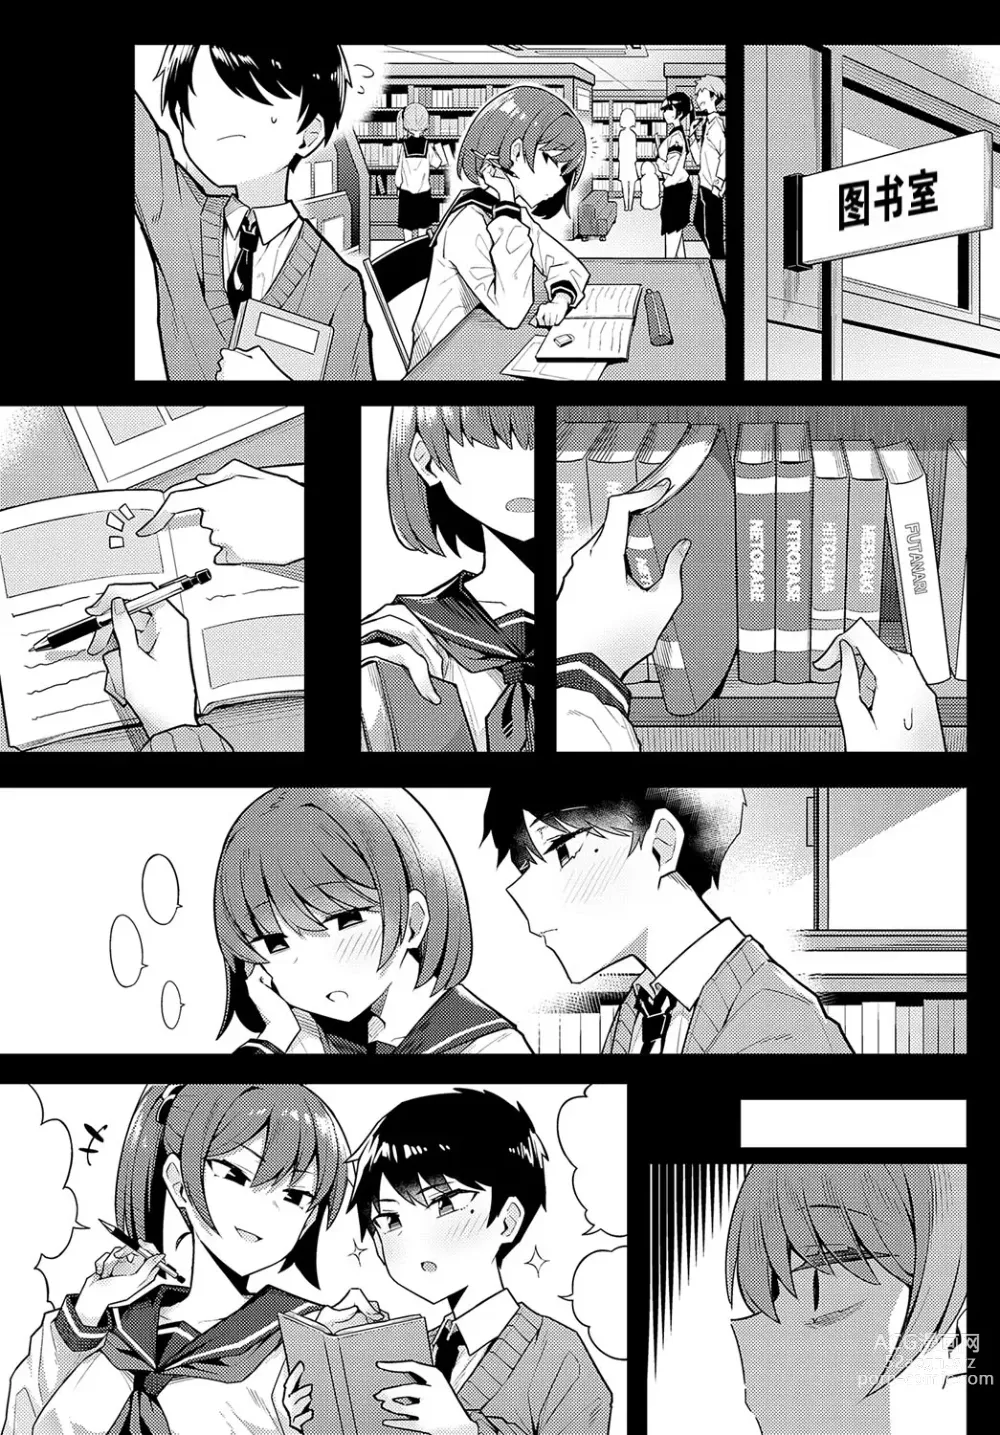 Page 27 of manga Hitotsu Kurai Moratte mo